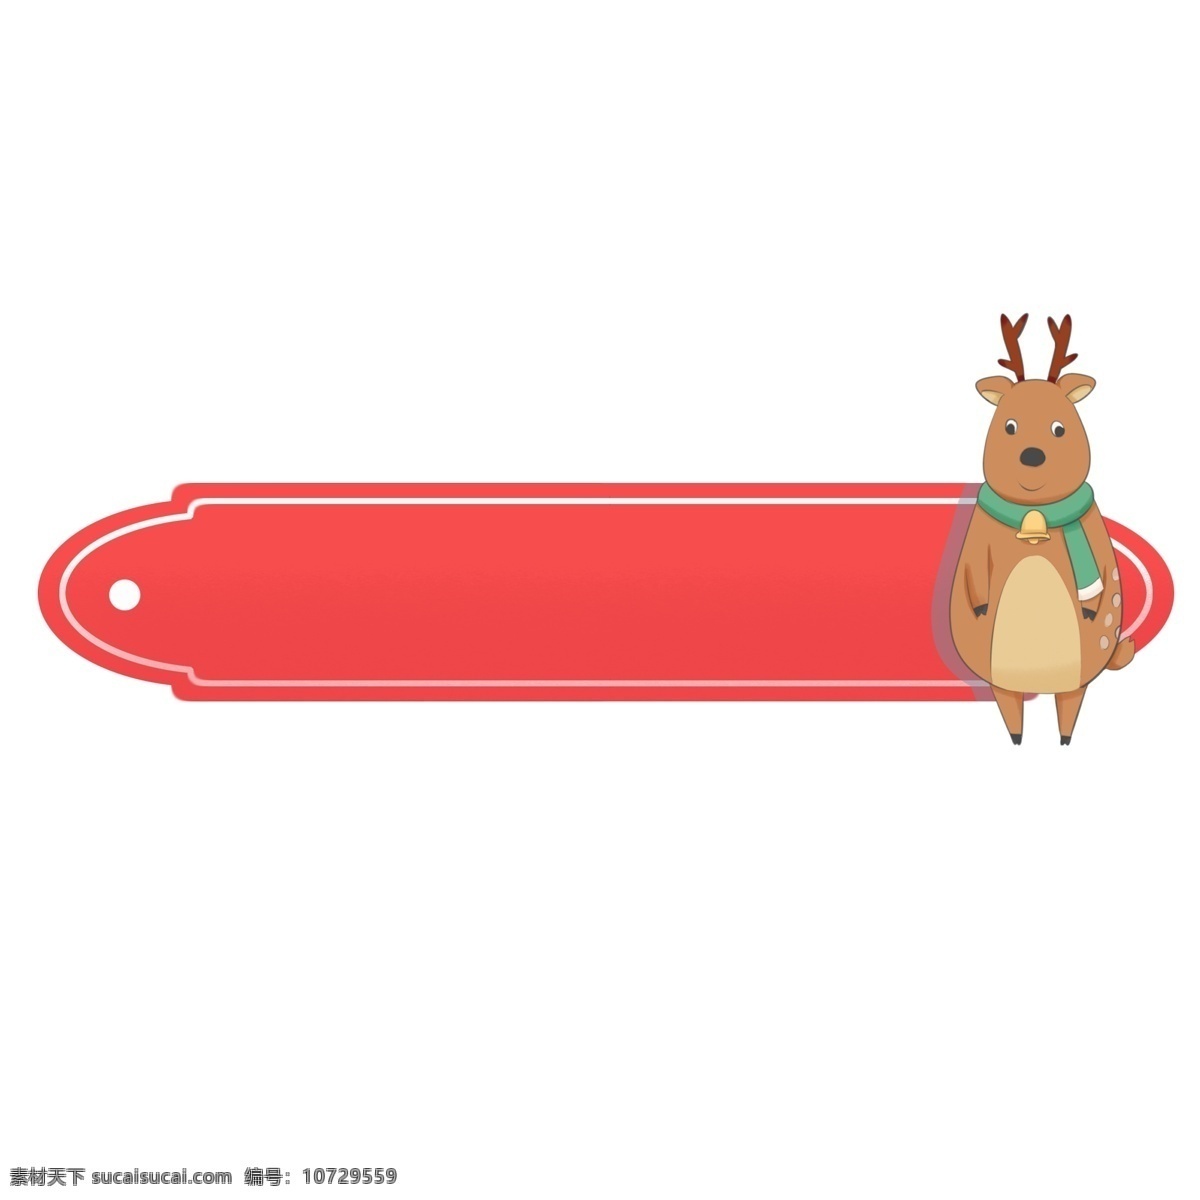 圣诞节 麋鹿 边框 插画 红色的边框 唯美边框 边框装饰 边框插画 可爱